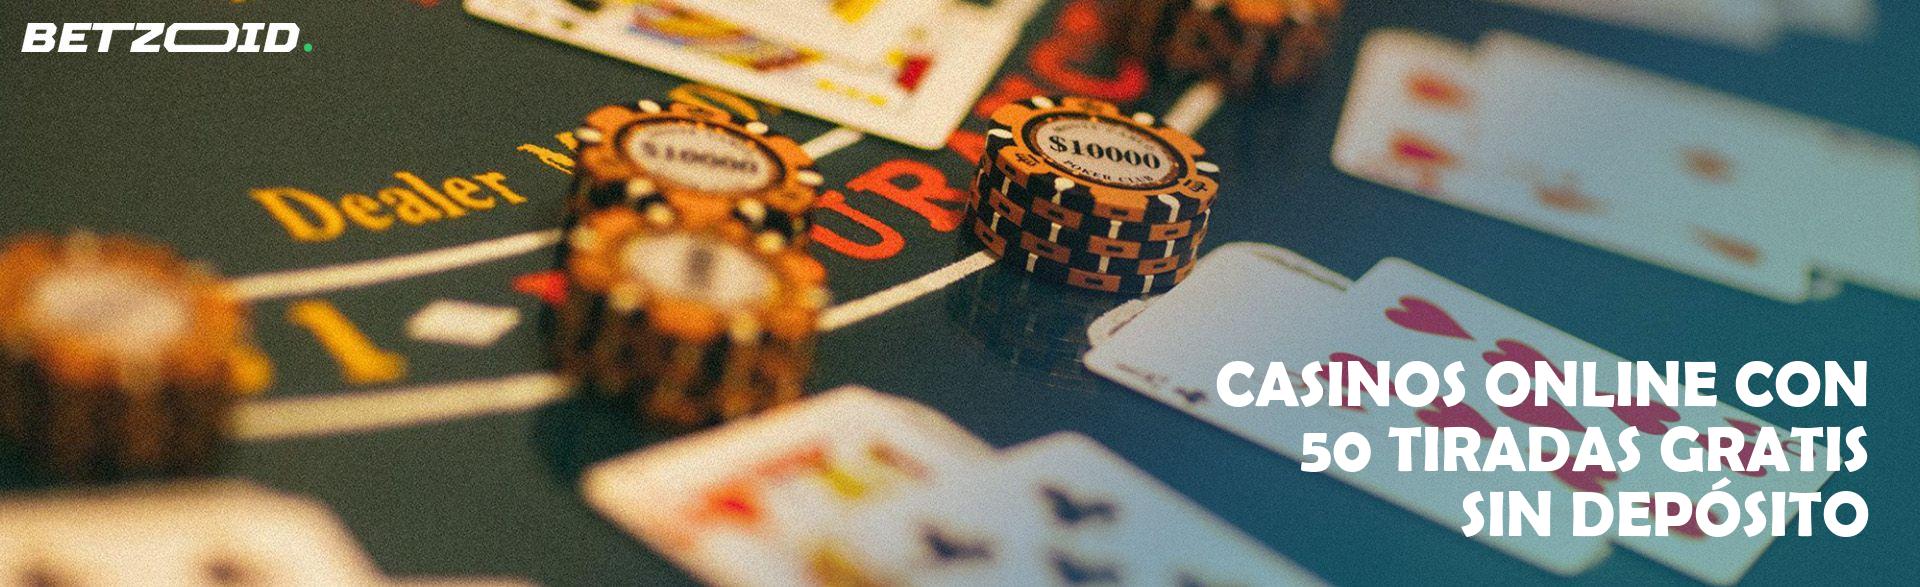 Casinos Online con 50 Tiradas Gratis sin Depósito.